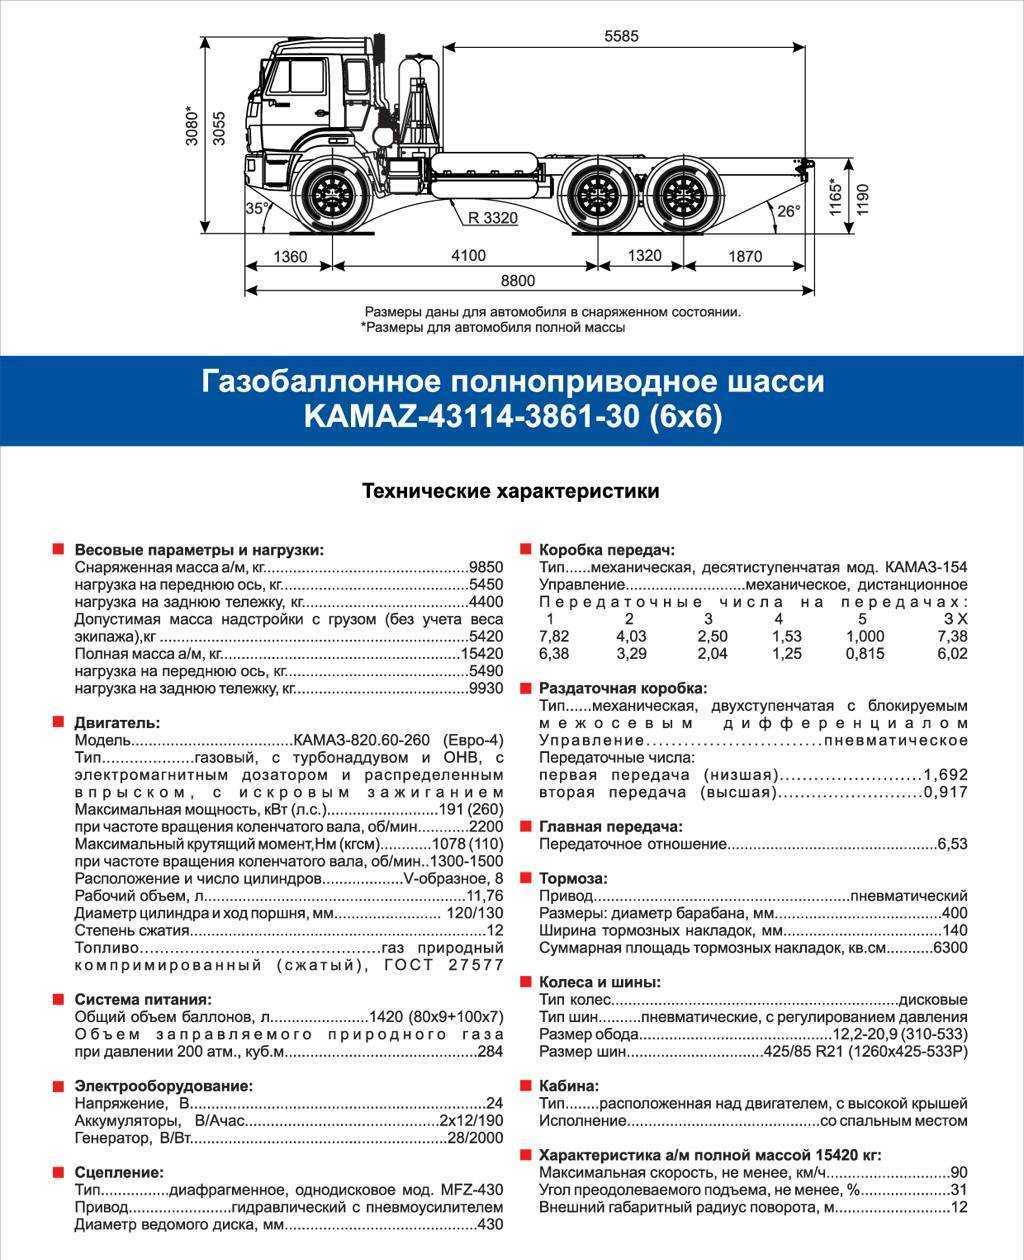 Камаз-5320 - технические характеристики, модификации, фото, видео, обзор